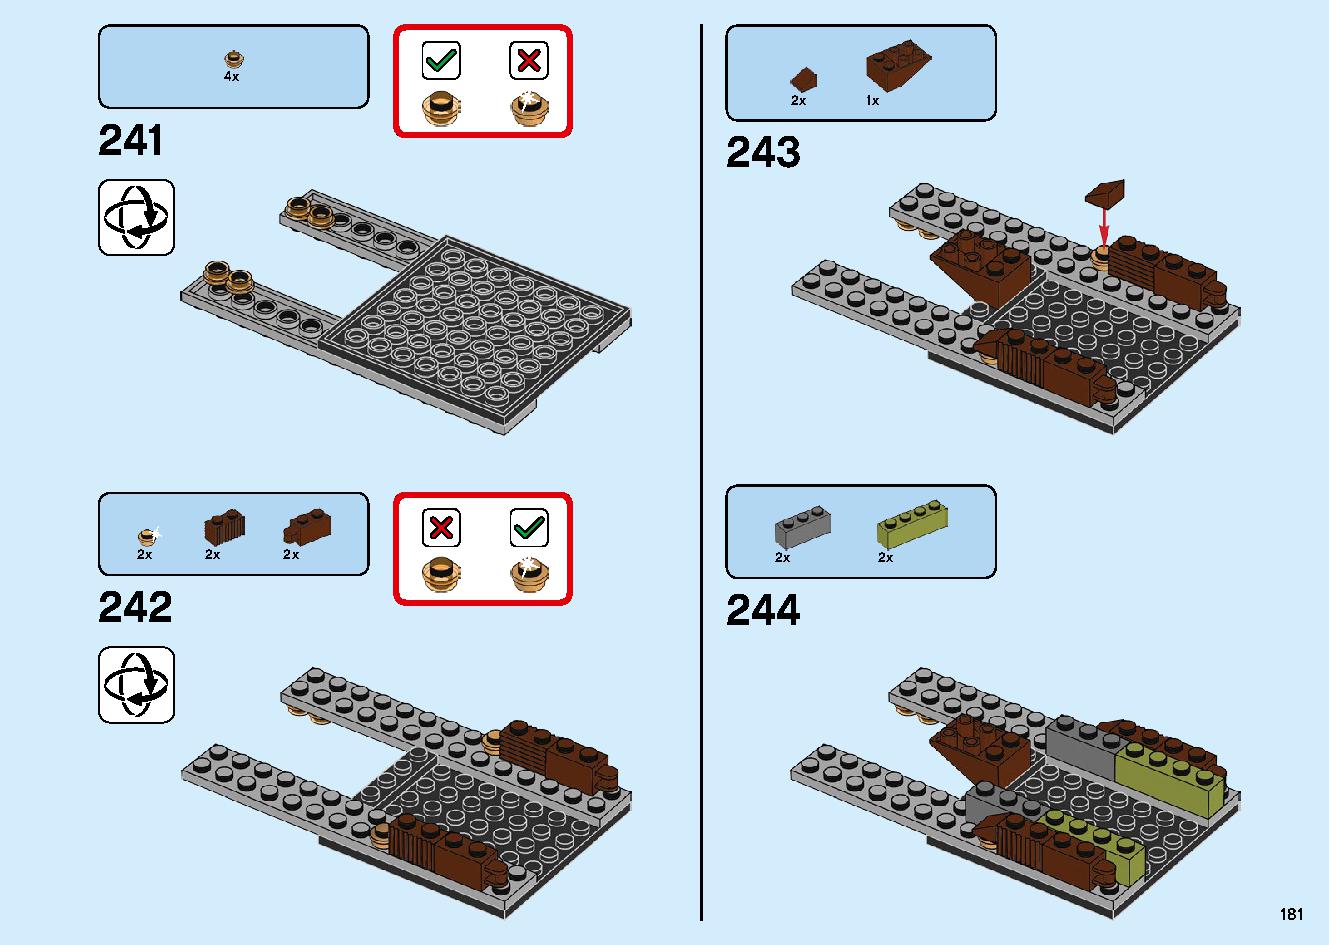 陸上戦艦バウンティ号 70677 レゴの商品情報 レゴの説明書・組立方法 181 page